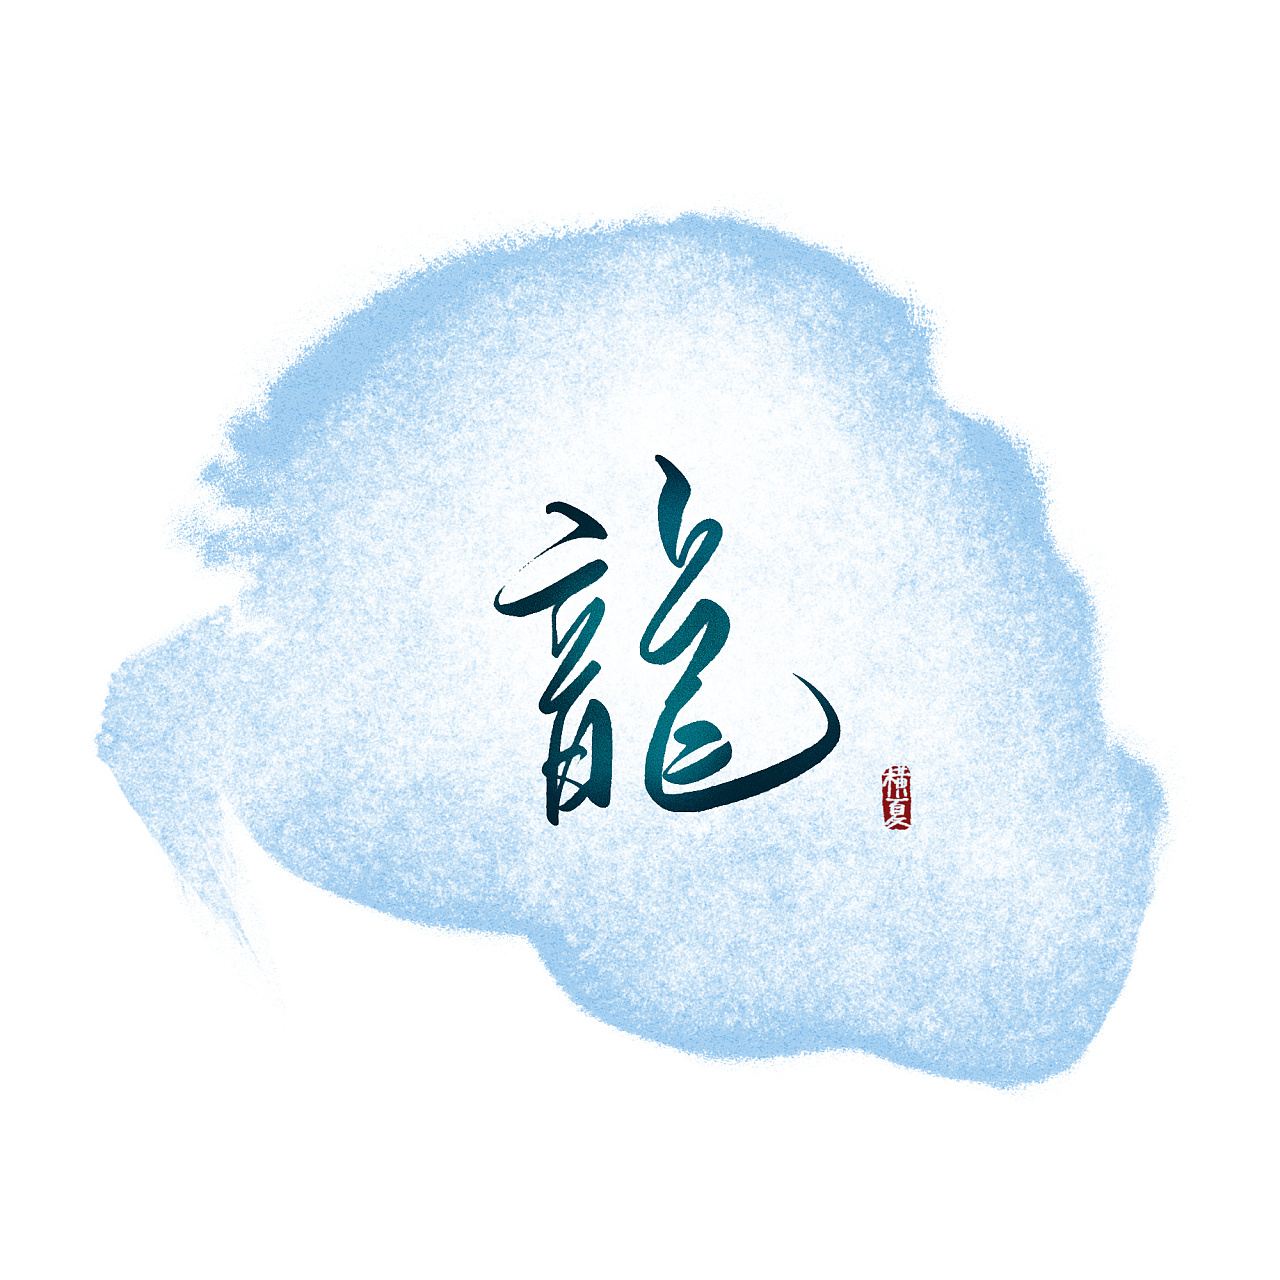 中国风书法山水背景艺术字免费下载 - 觅知网